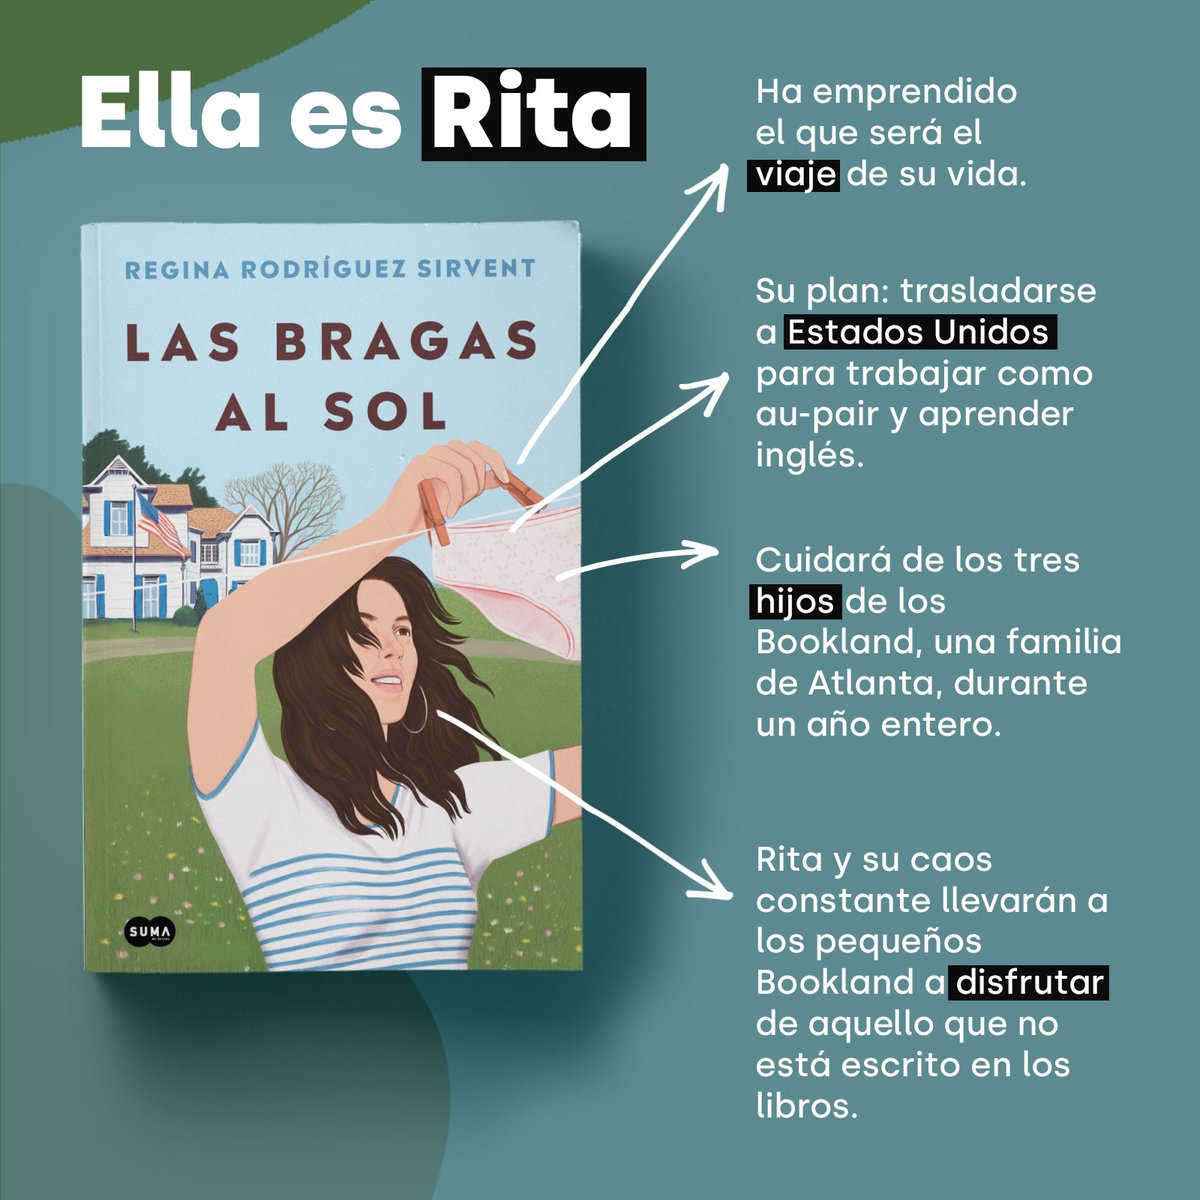 Penguin España 🐧📚 on X: ¿Alguna au-pair en la sala? La vida de Rita, la  protagonista «Las bragas al sol», os traerá recuerdos de vuestra  experiencia. Así es la protagonista de la